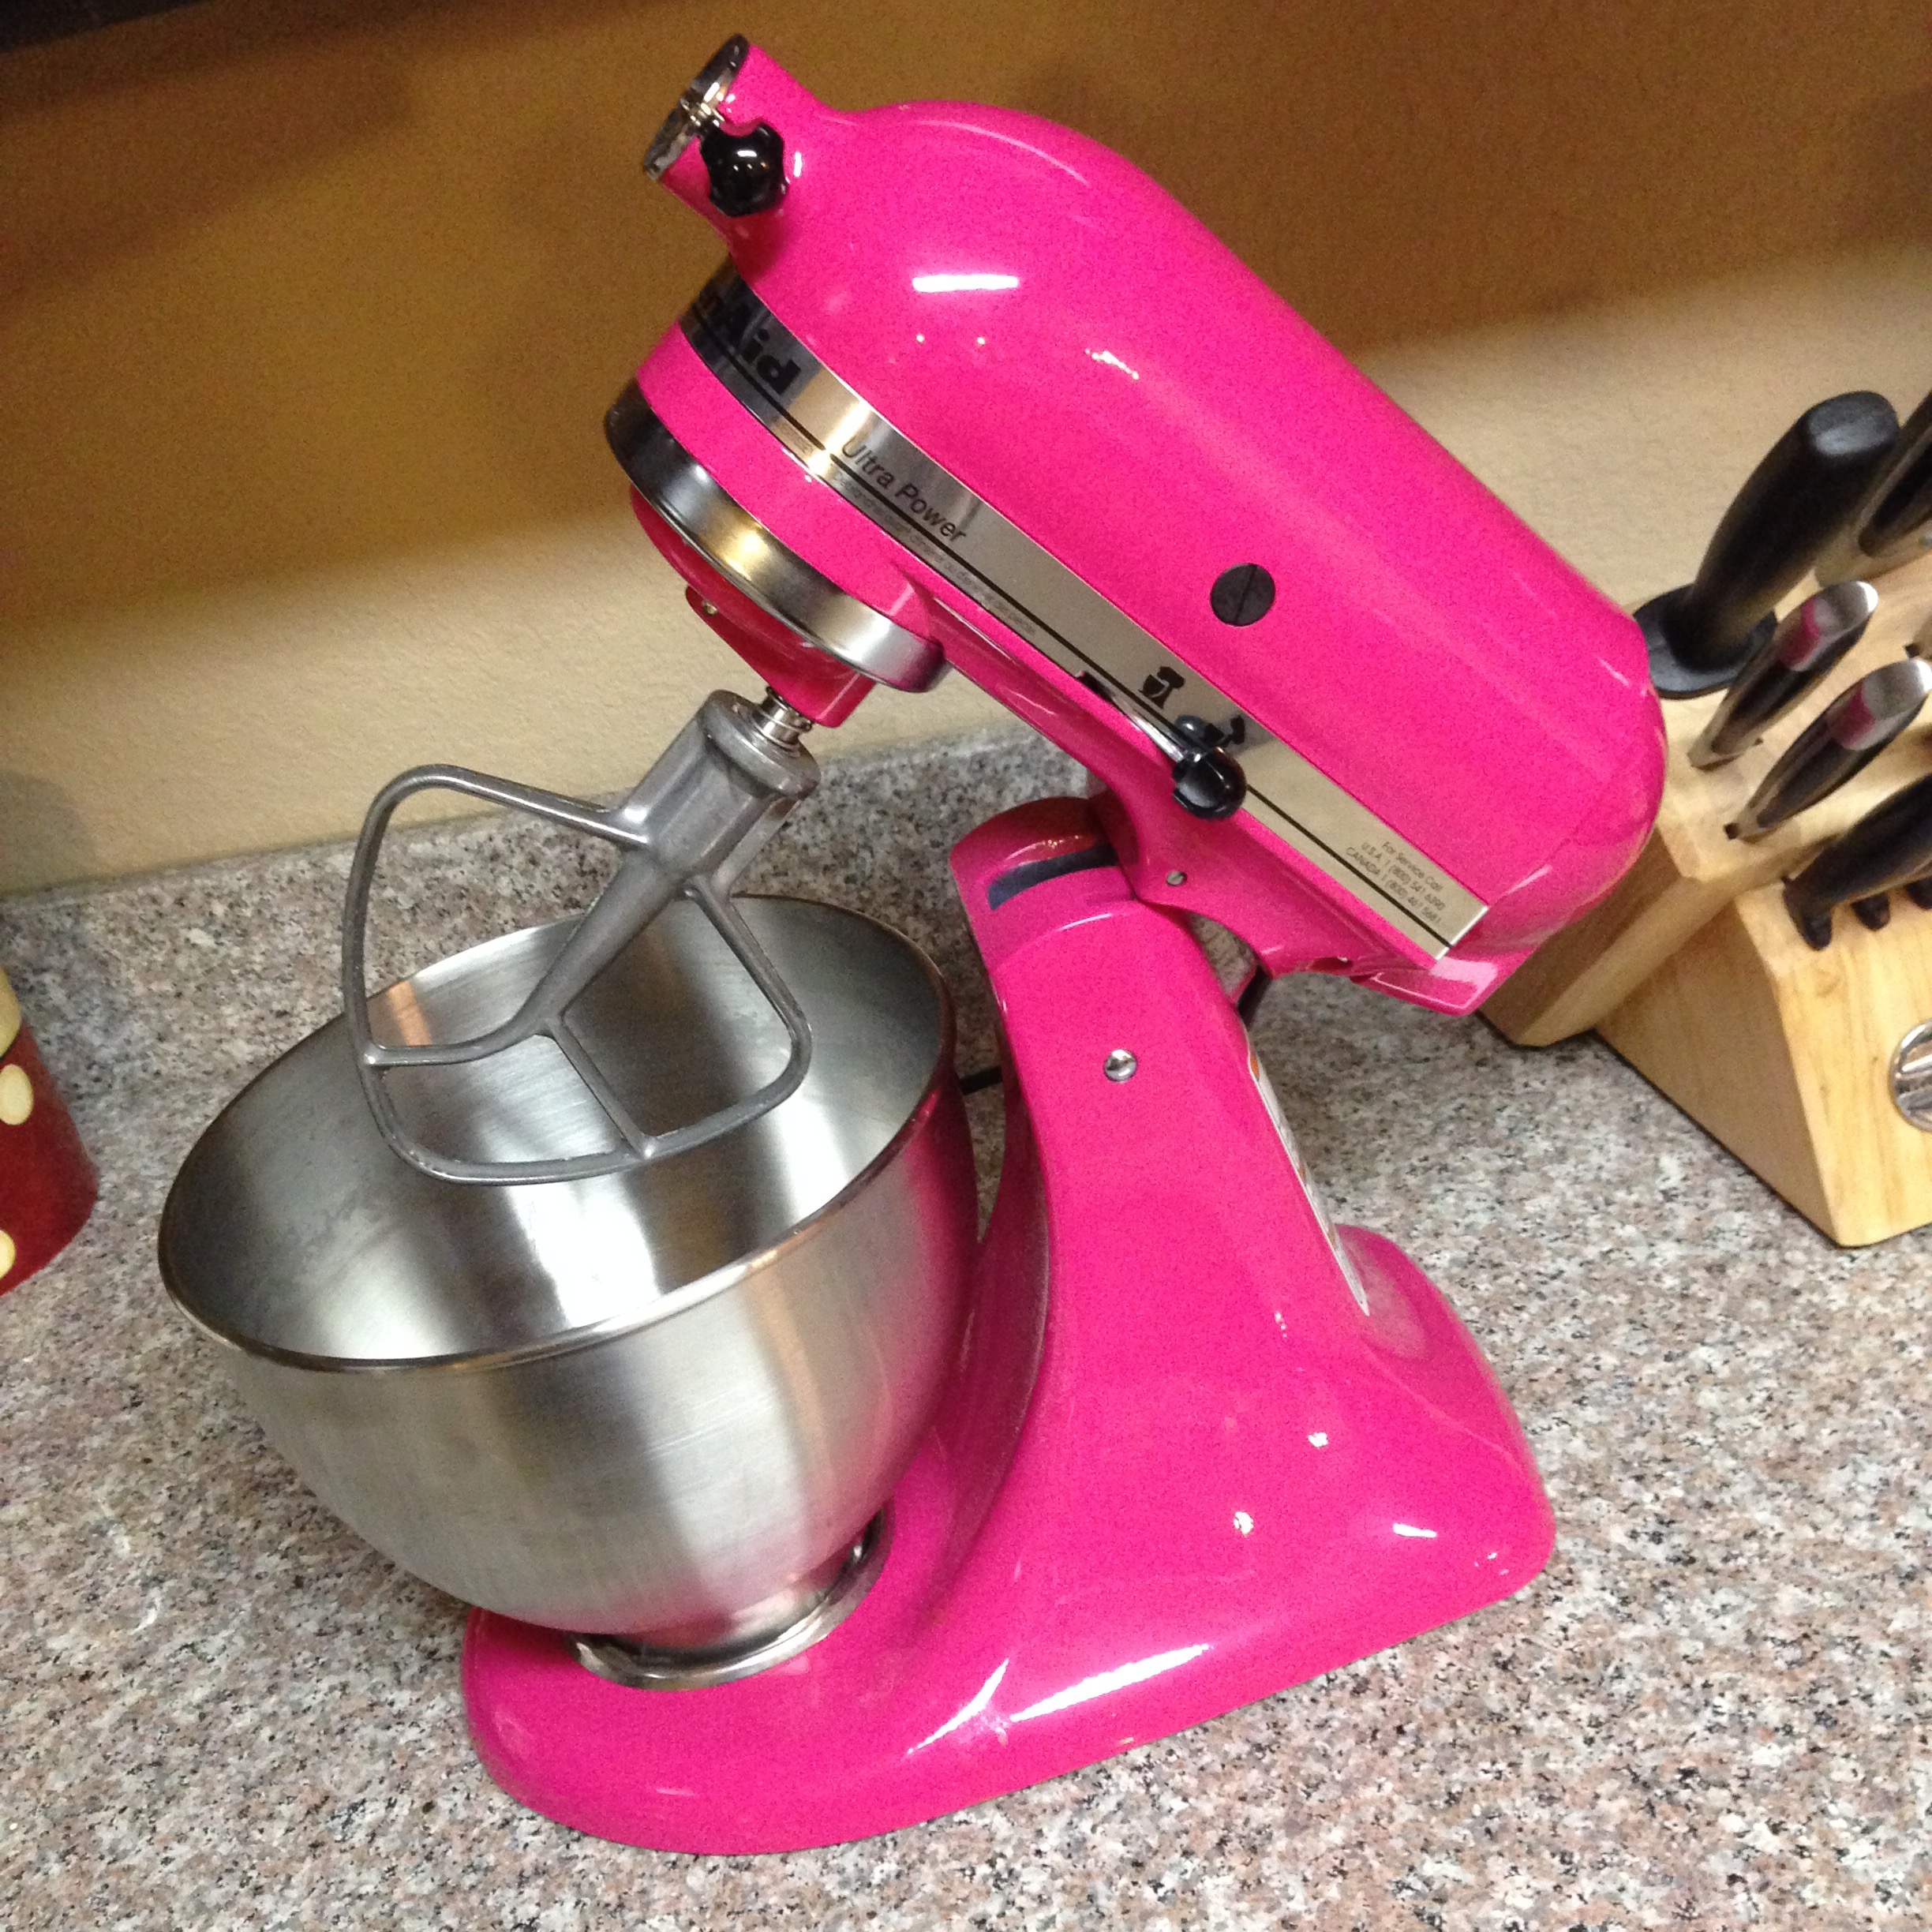 Dear Pink Kitchenaid Mixer - ricci alexis